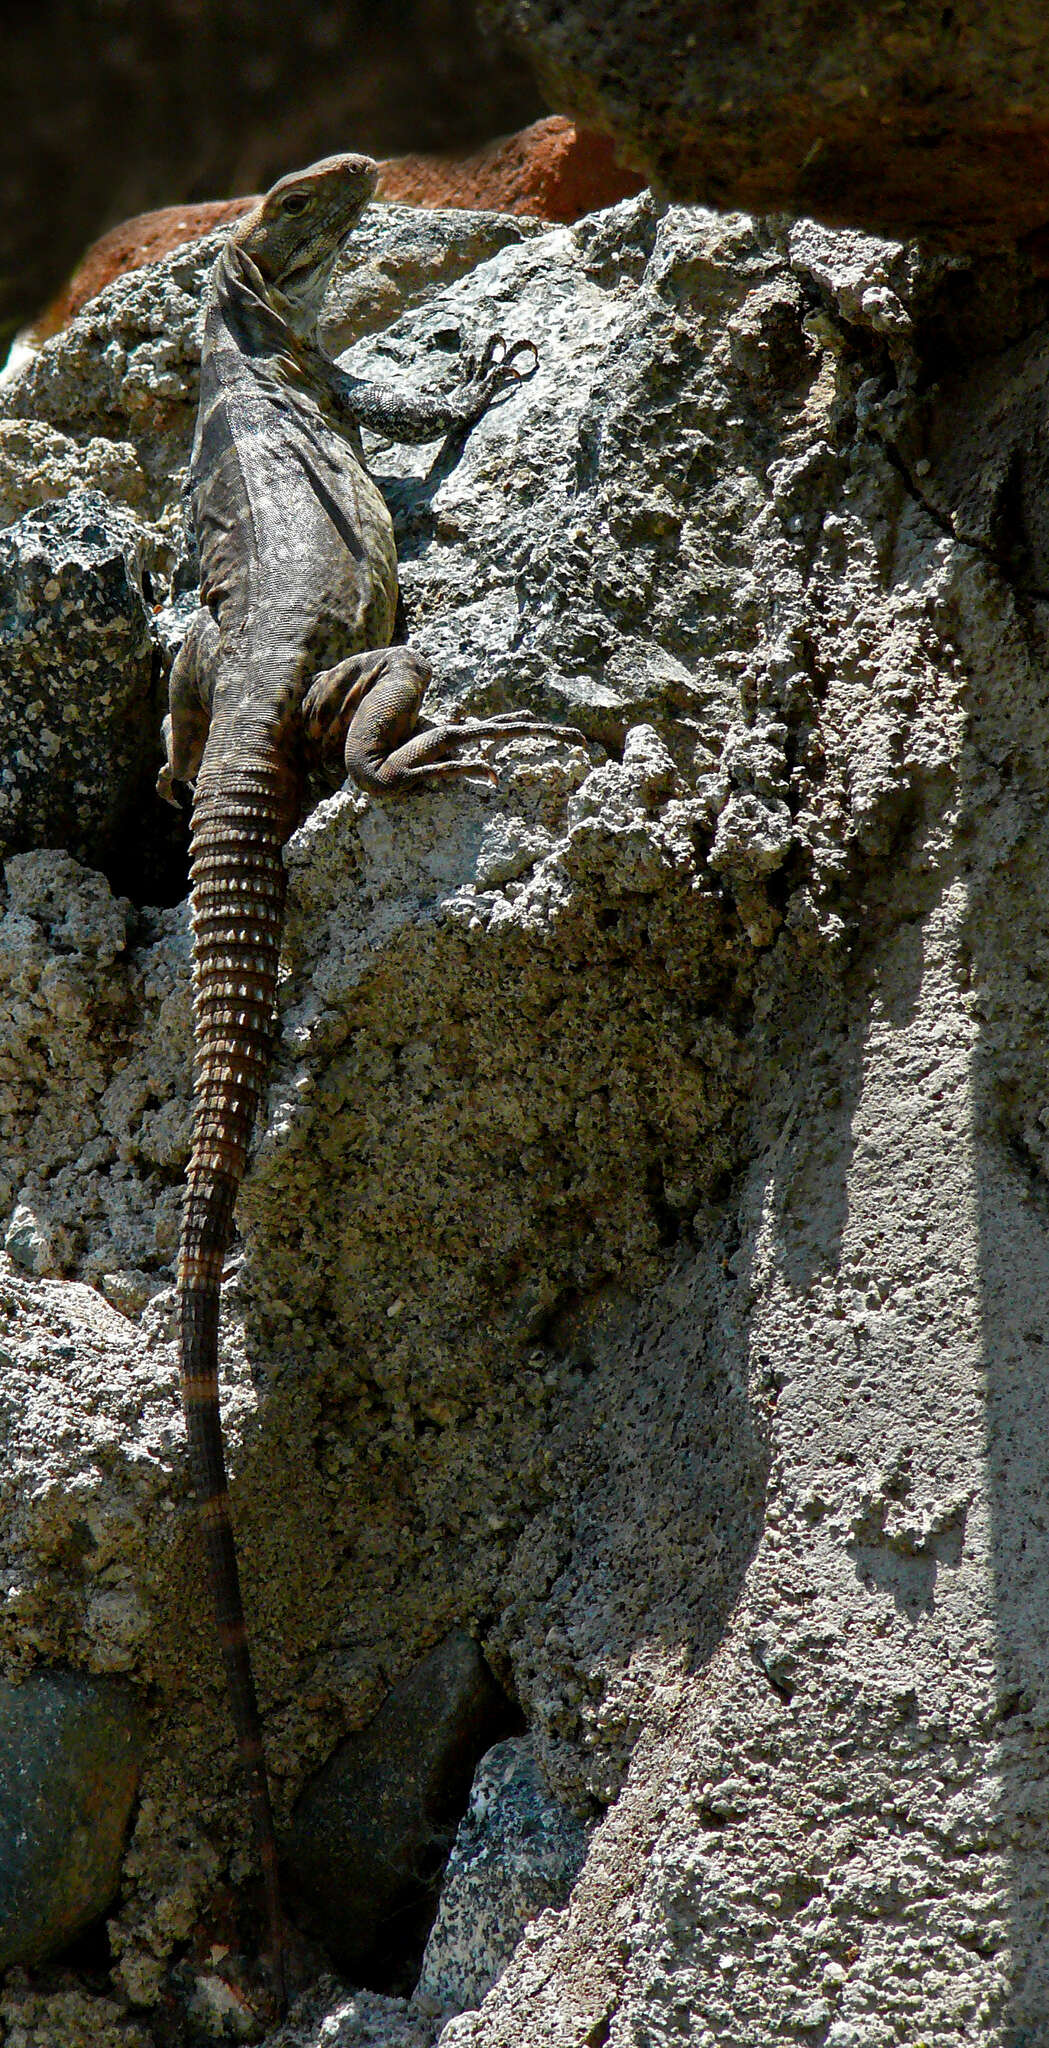 Image of Cape Spinytail Iguana